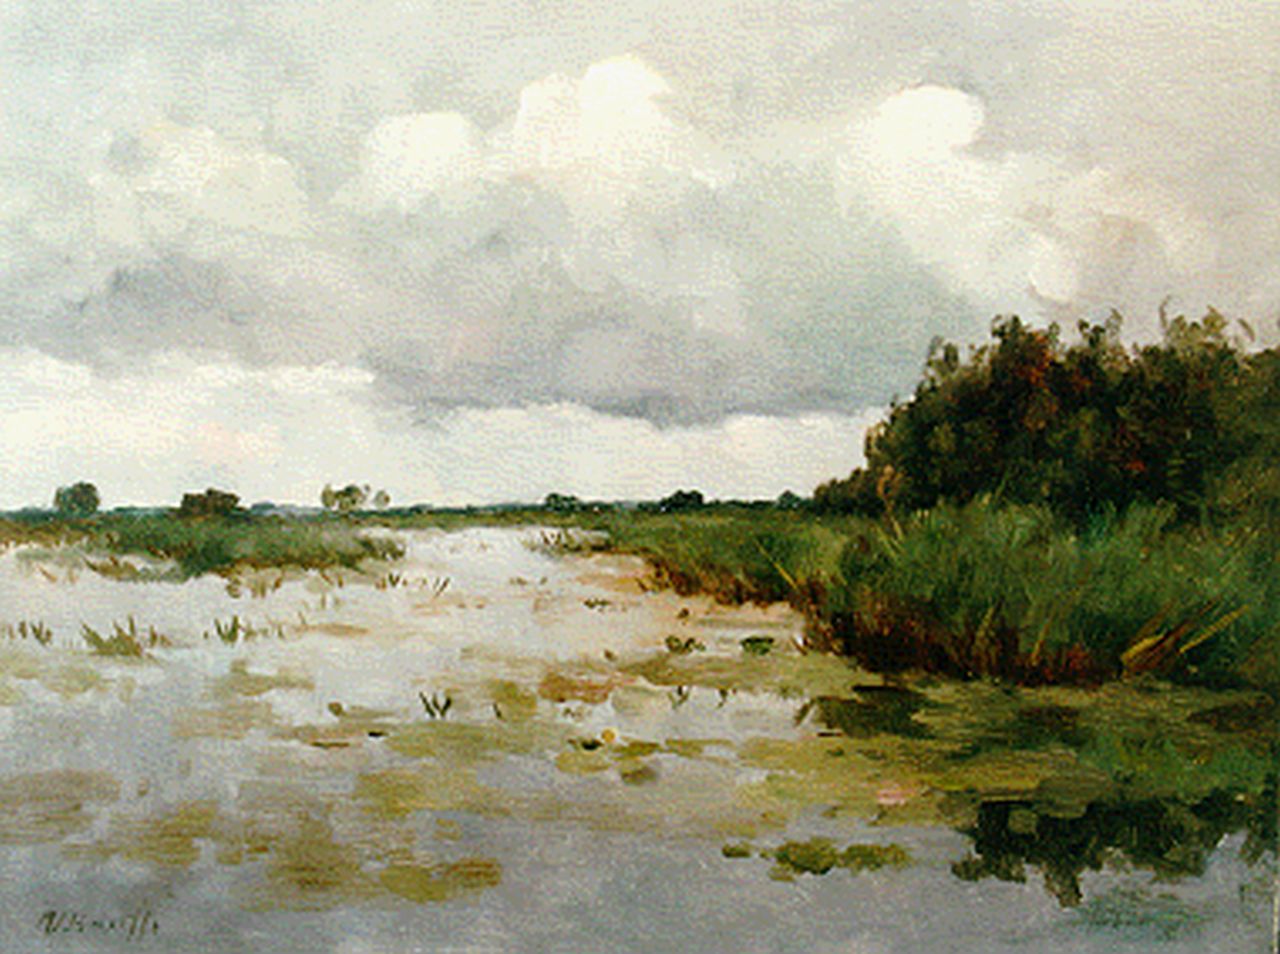 Bauffe V.  | Victor Bauffe, Polderlandschap bij Kortenhoef, olieverf op doek 38,5 x 50,2 cm, gesigneerd linksonder